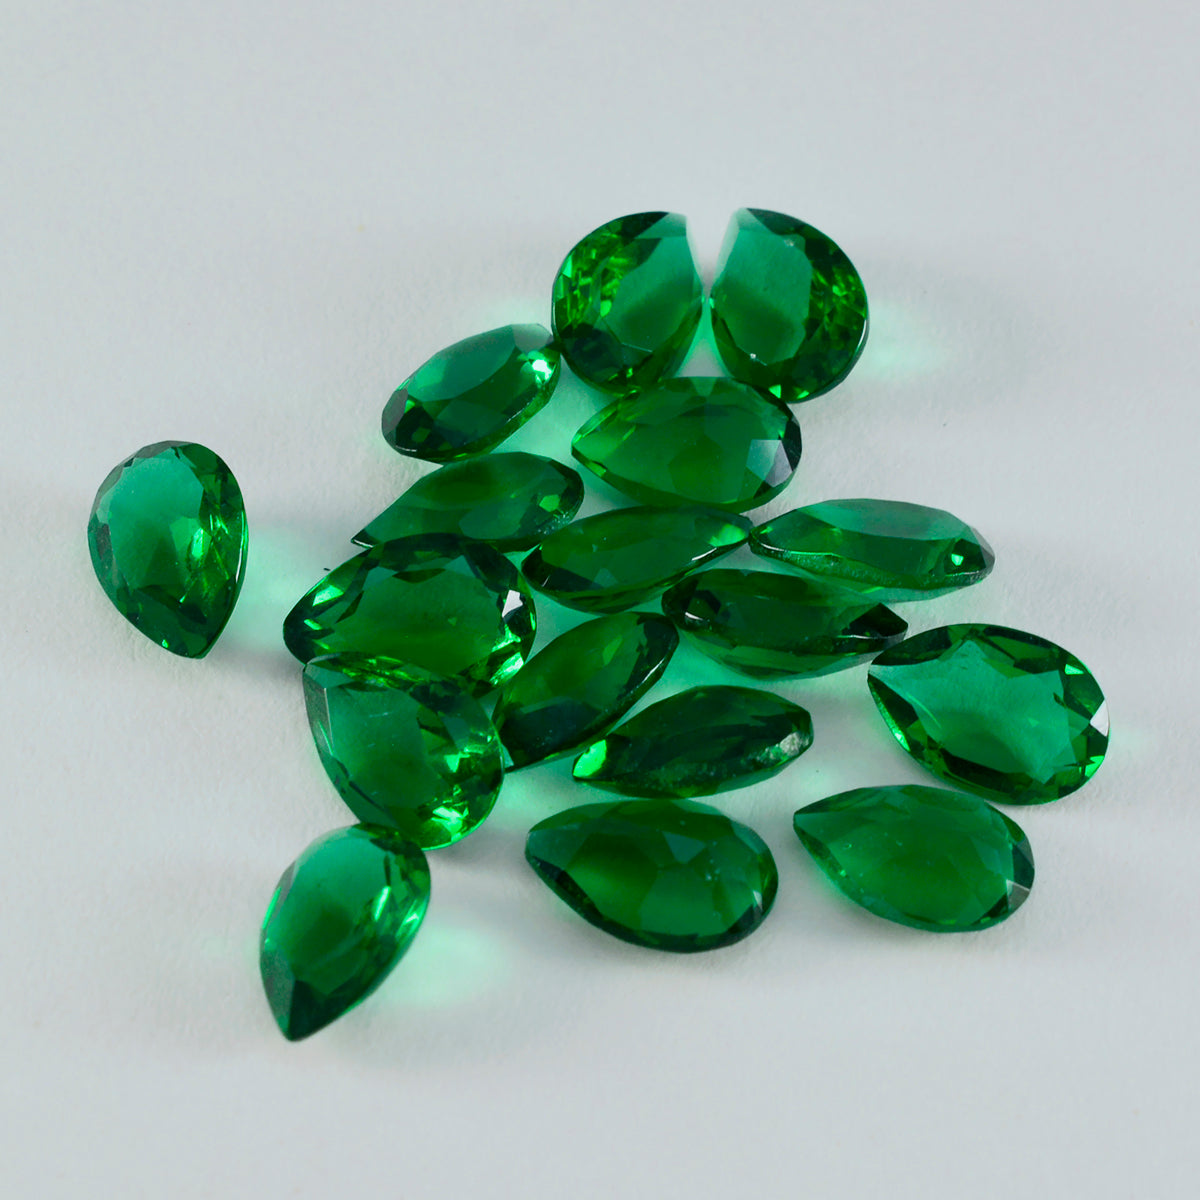 Riyogems 1 pieza verde esmeralda CZ facetada 8x12 mm forma de pera piedra preciosa de calidad maravillosa